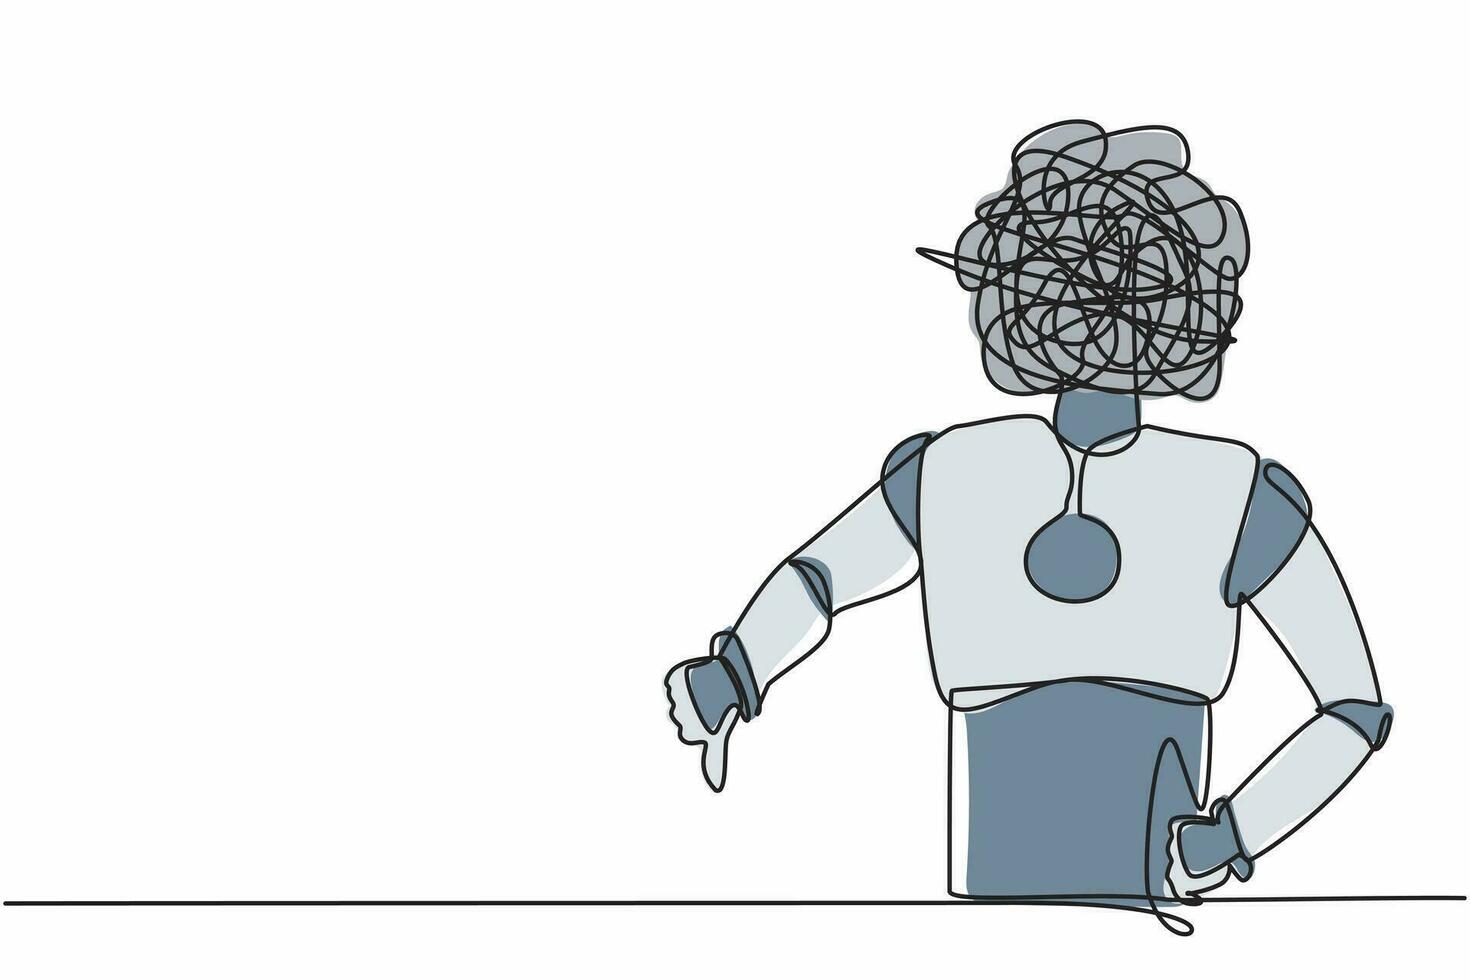 enkele doorlopende lijntekeningrobot met ronde krabbels in plaats van hoofd, met duim omlaag teken, afkeer, afkeuring. robot kunstmatige intelligentie. één regel grafisch ontwerp vectorillustratie vector